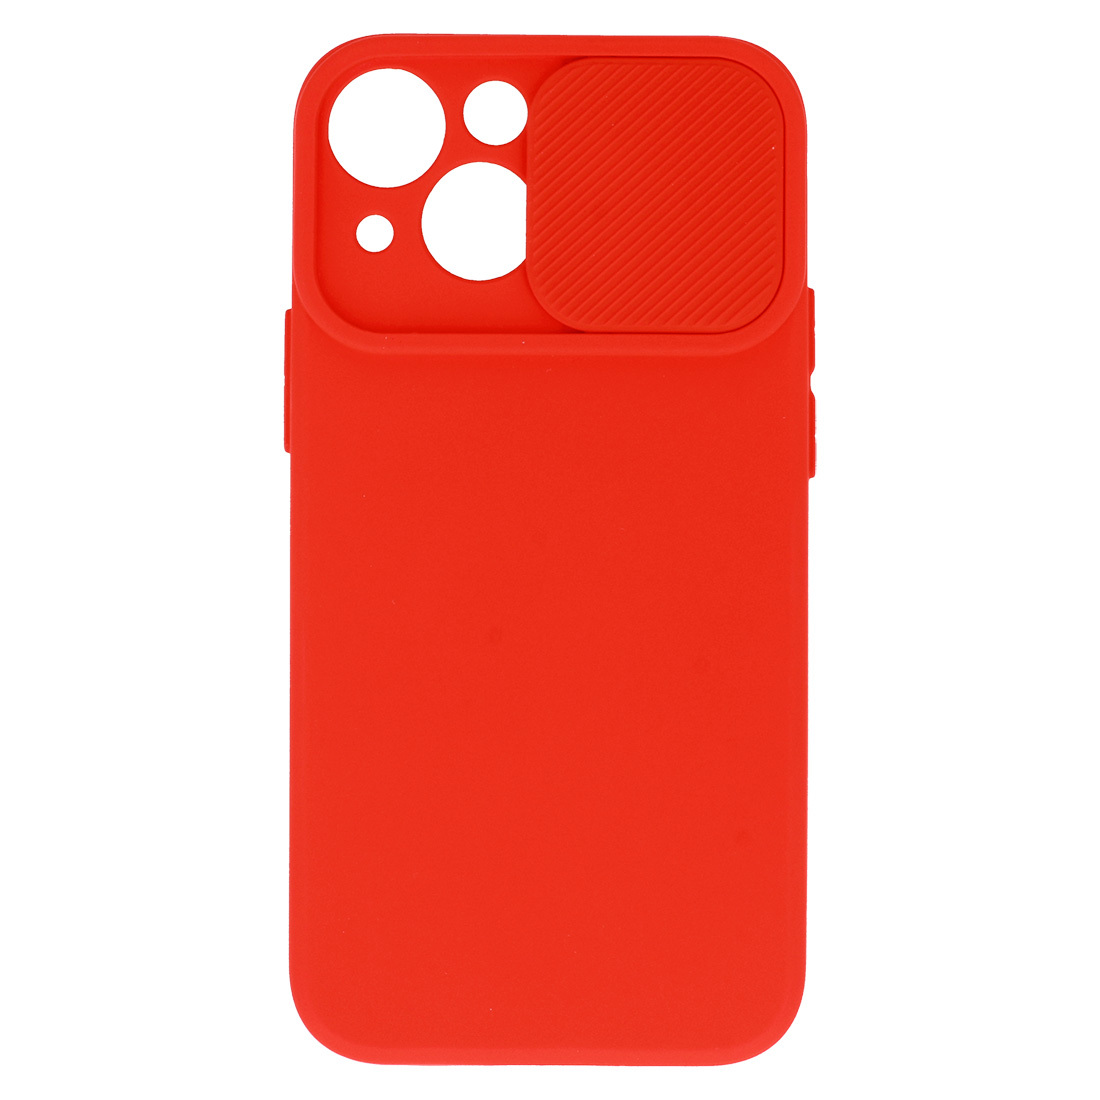 Pokrowiec etui z elastycznego TPU Camshield Soft Case czerwone APPLE iPhone XS / 4